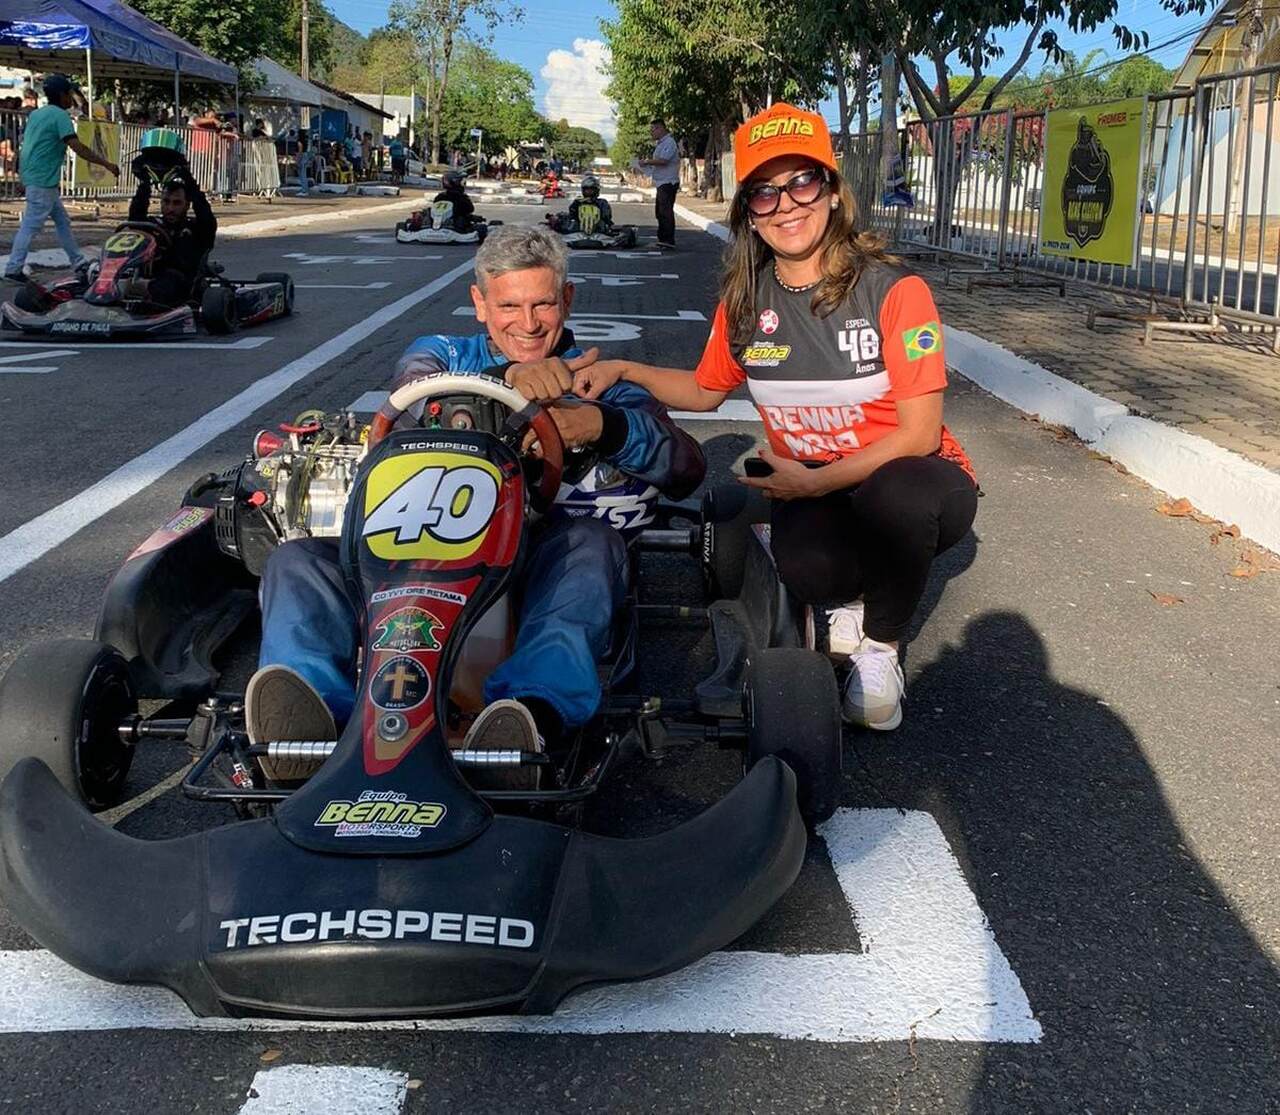 Vereador de Palmas, Benna Maia participa da 3ª etapa de Kart realizada em Lajeado